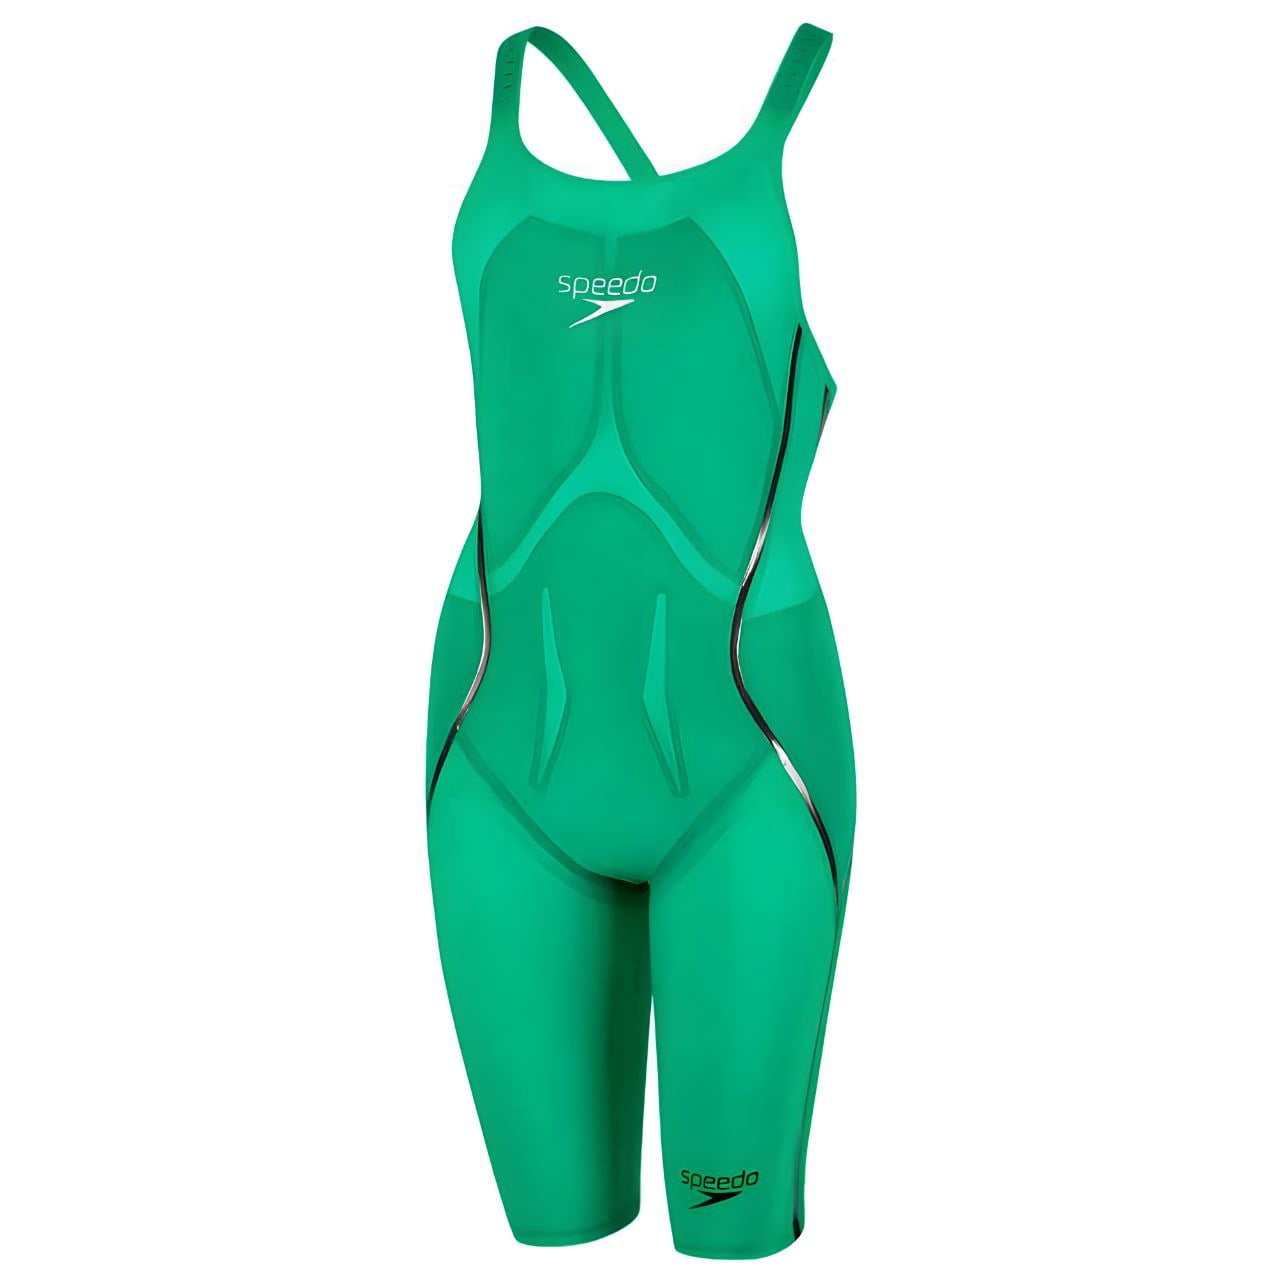 SPEEDO Women's LZR Racer X Fastskin Recordbreaker Swimsuit, Green, 22 